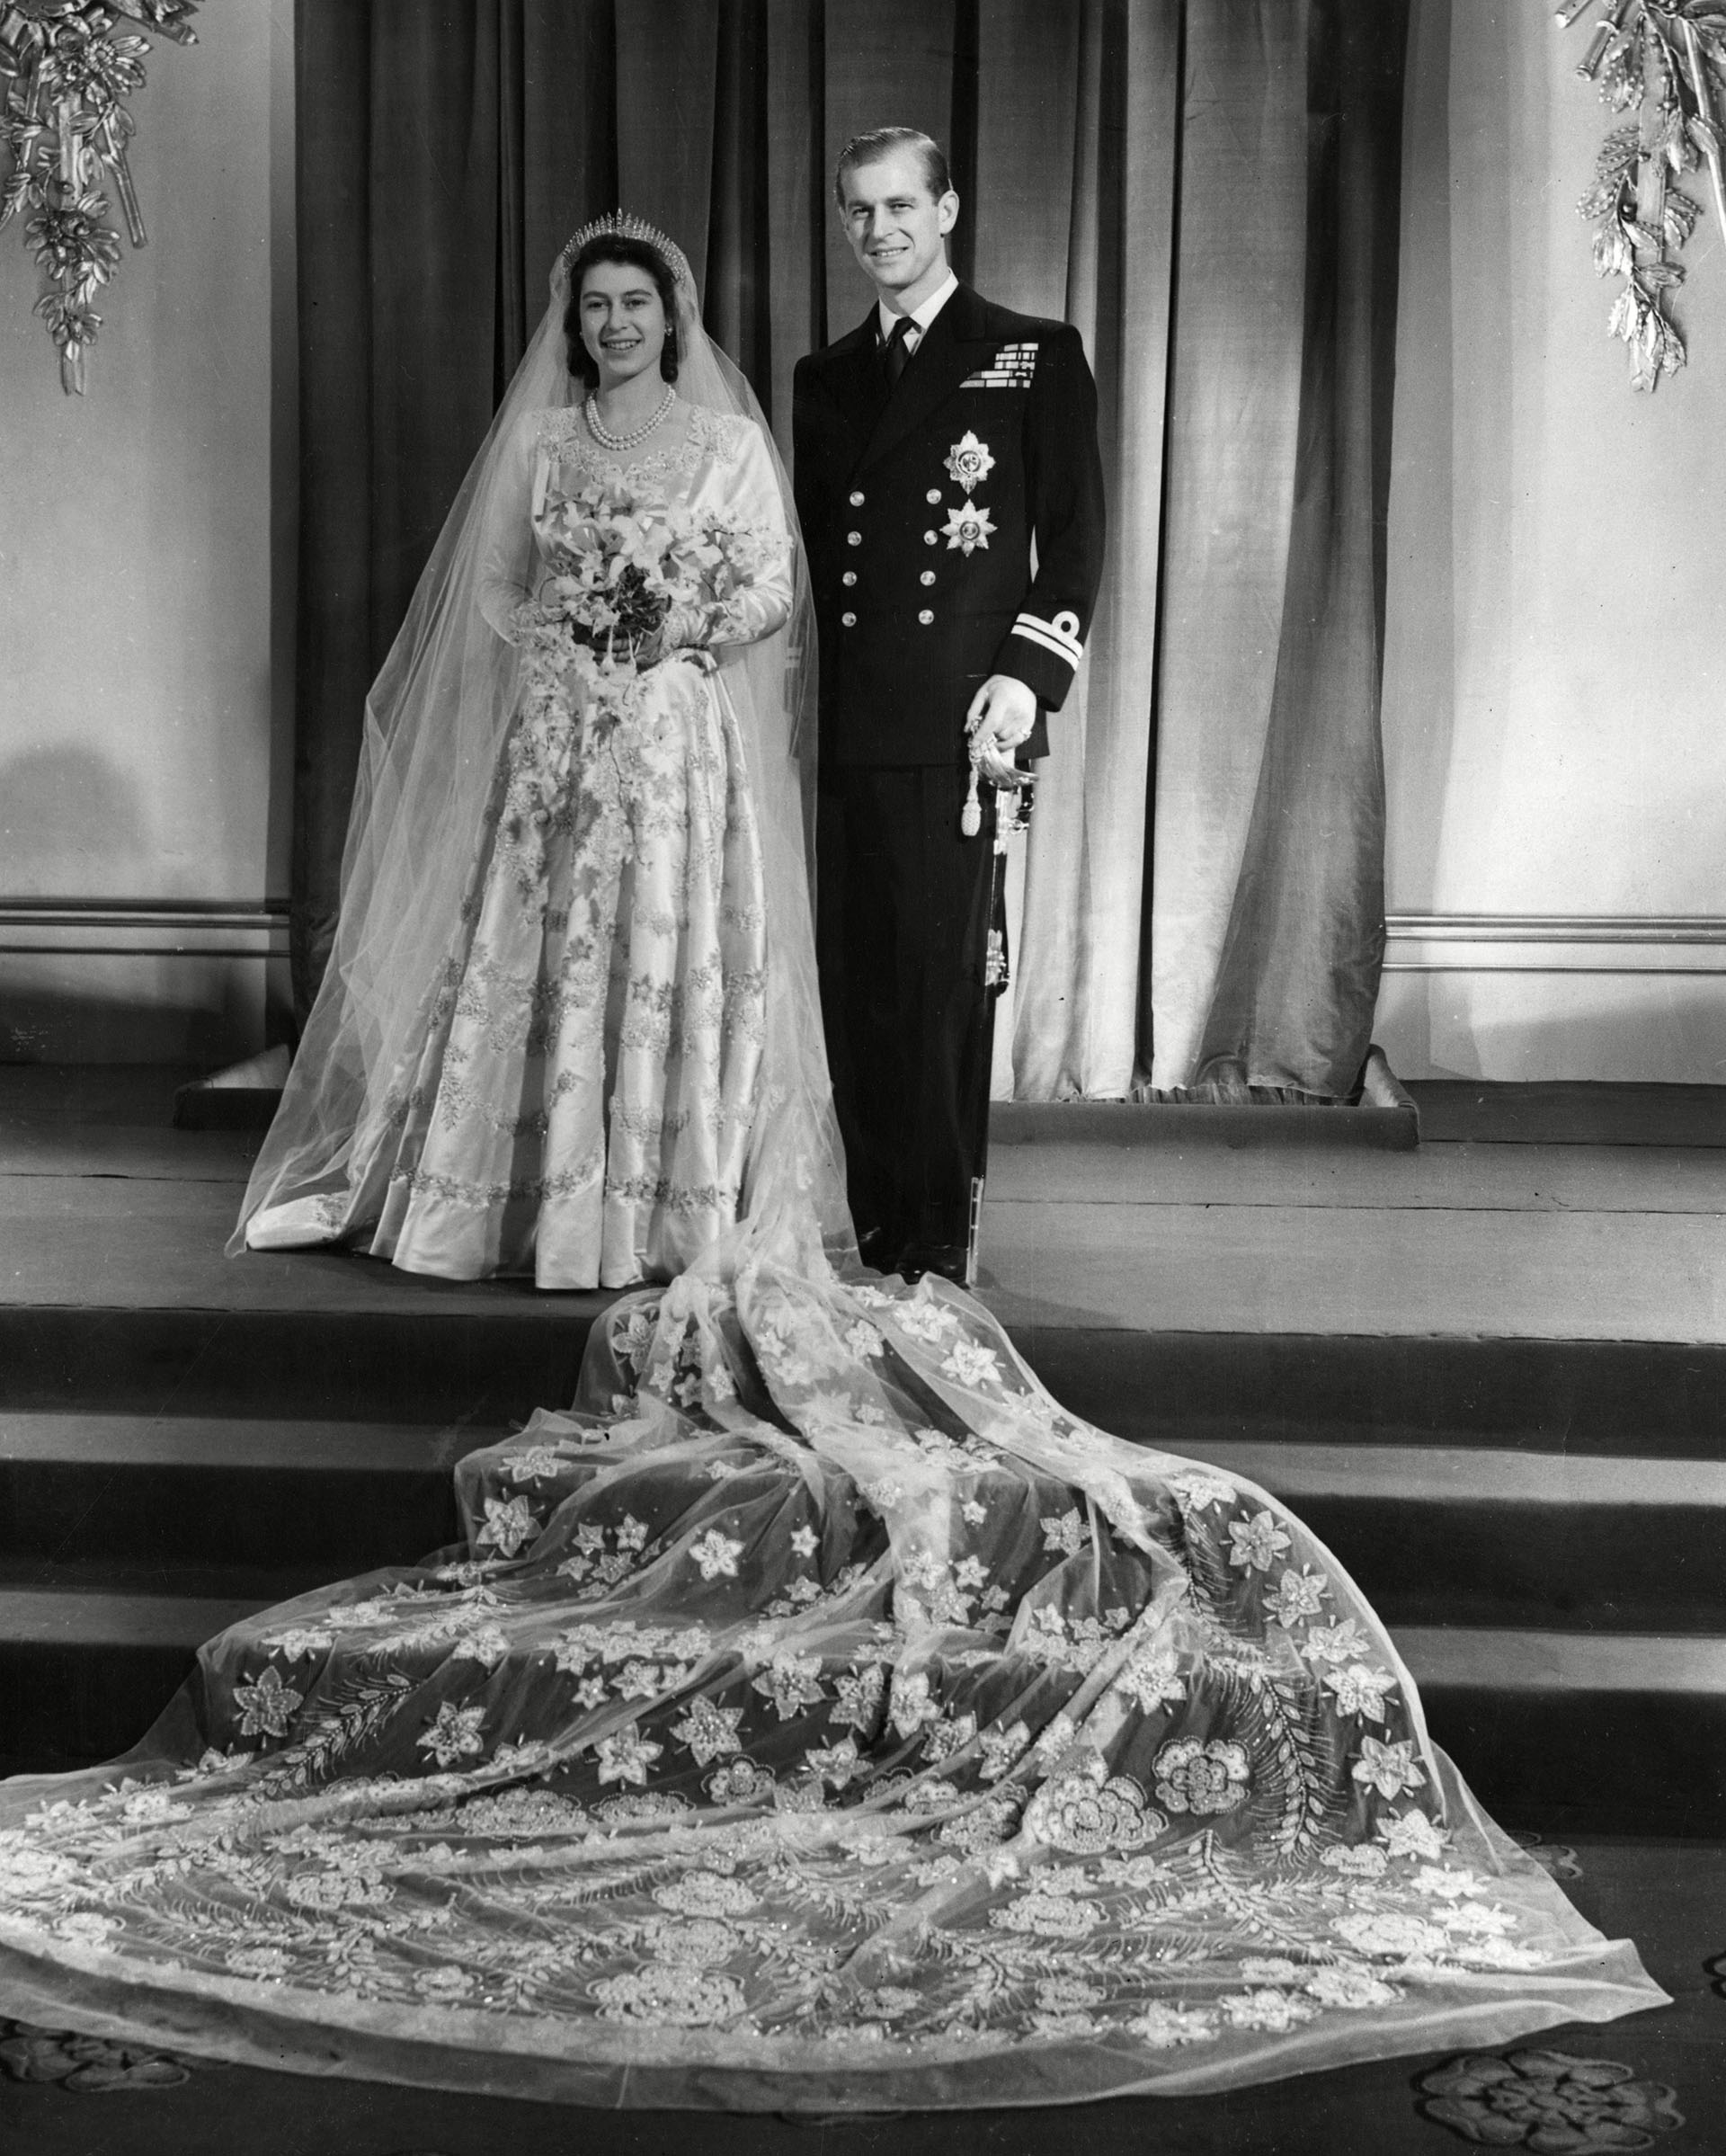 El 20 de noviembre de 1947, Felipe contrajo matrimonio con la heredera del trono británico, la princesa Isabel. Para casarse, Felipe tuvo que renunciar a su religión y a su lealtad a Grecia. Por eso, perdió su título de "príncipe de Grecia y Dinamarca". En la víspera de su boda, Jorge VI le concedió el título de duque de Edimburgo, otorgándole el tratamiento de Alteza Real